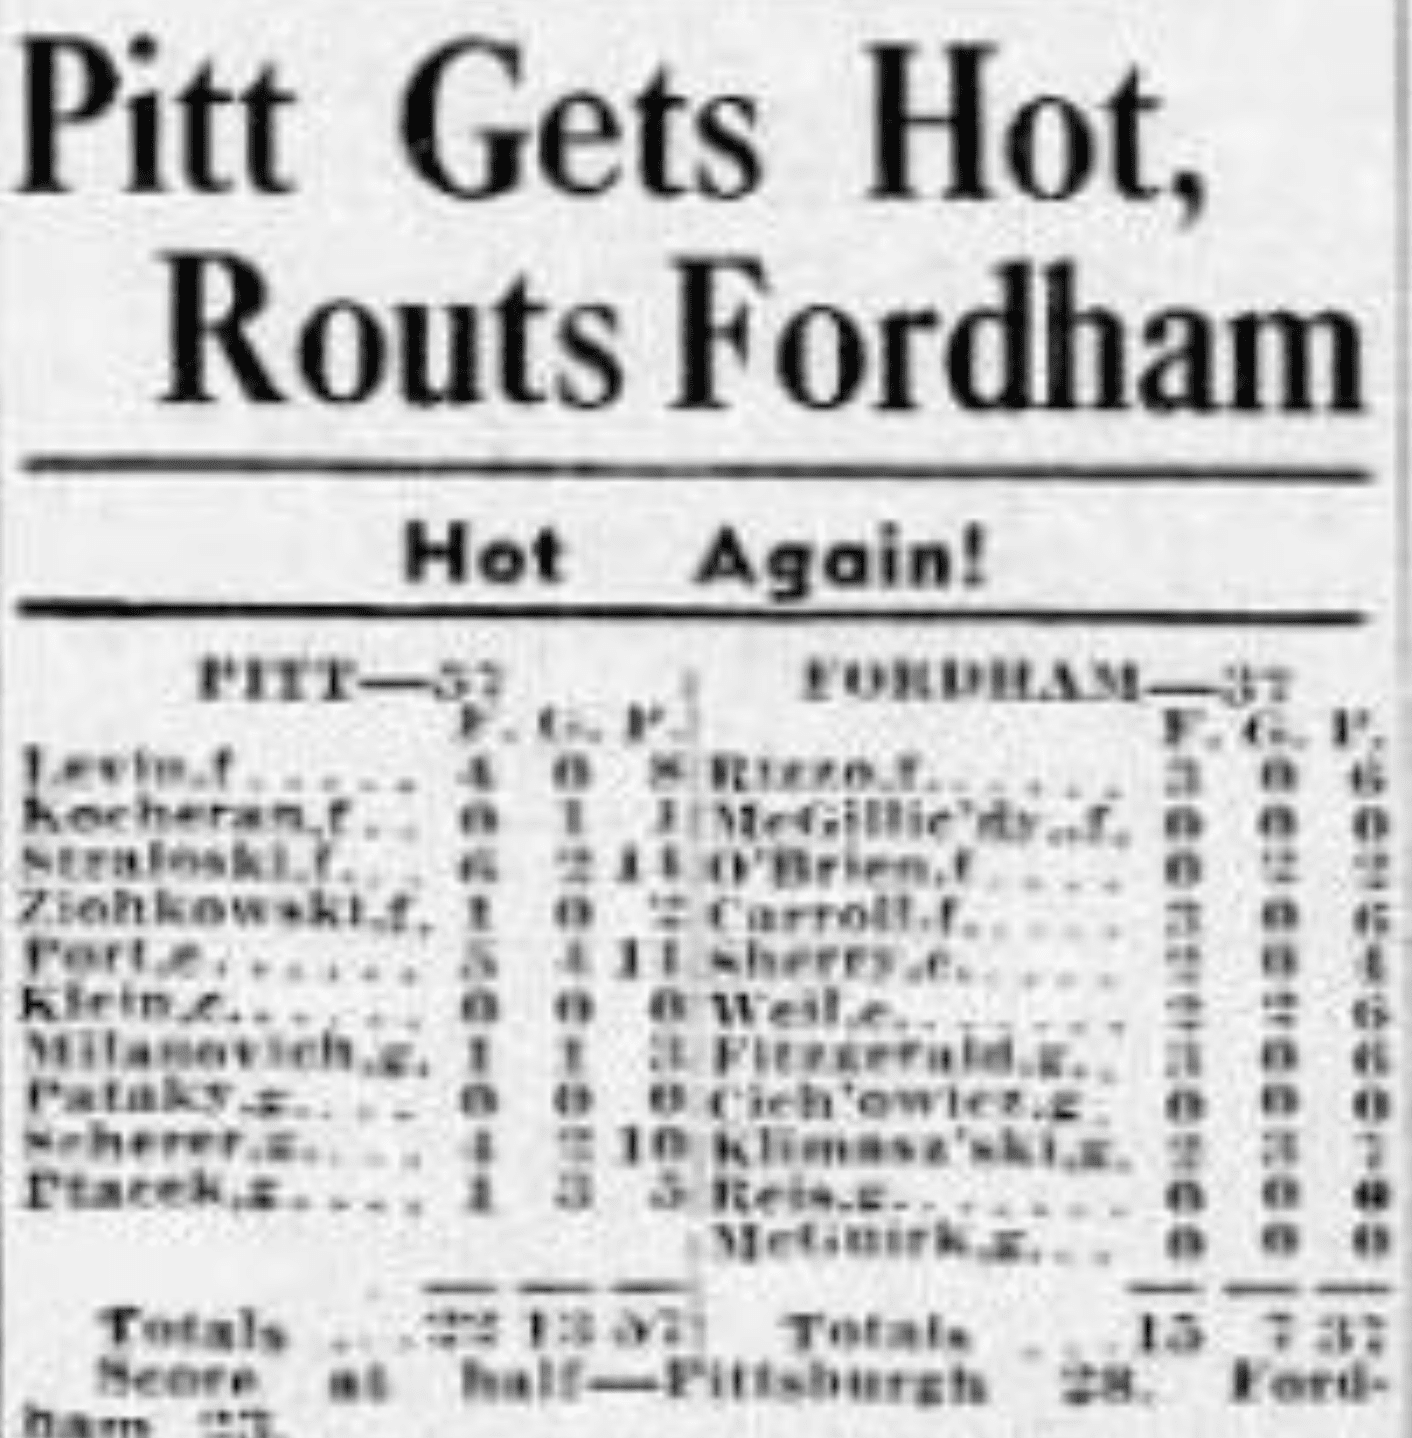 Pitt vs. Fordham in 1940